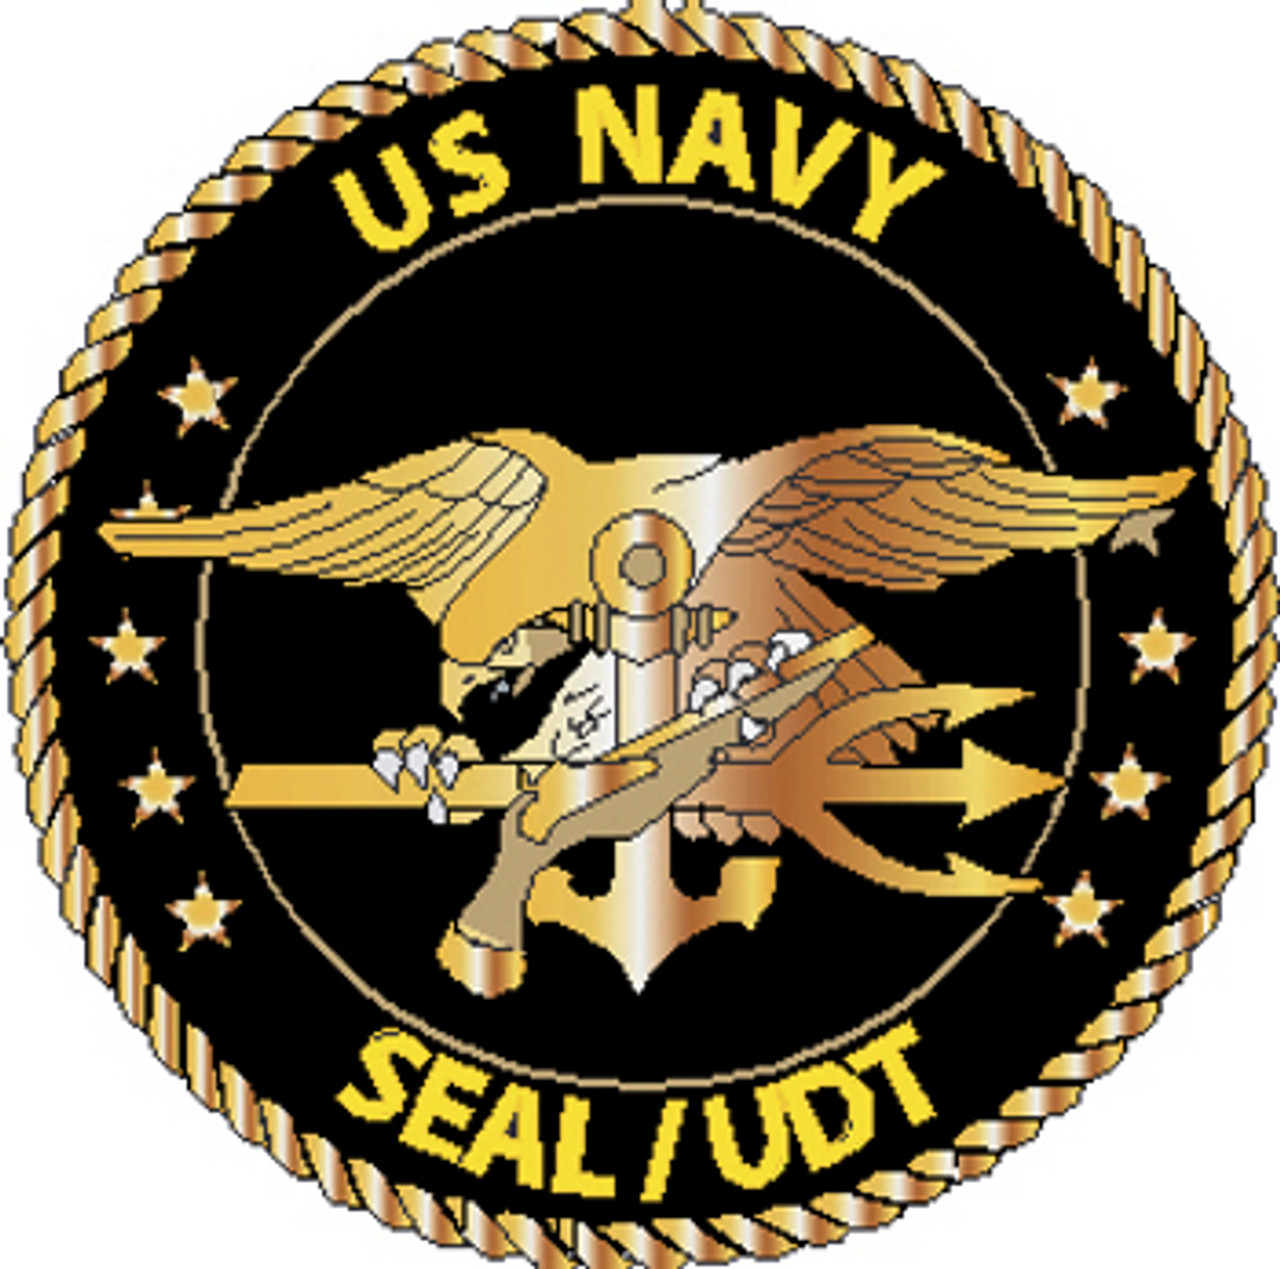 US Navy SEAL UDT